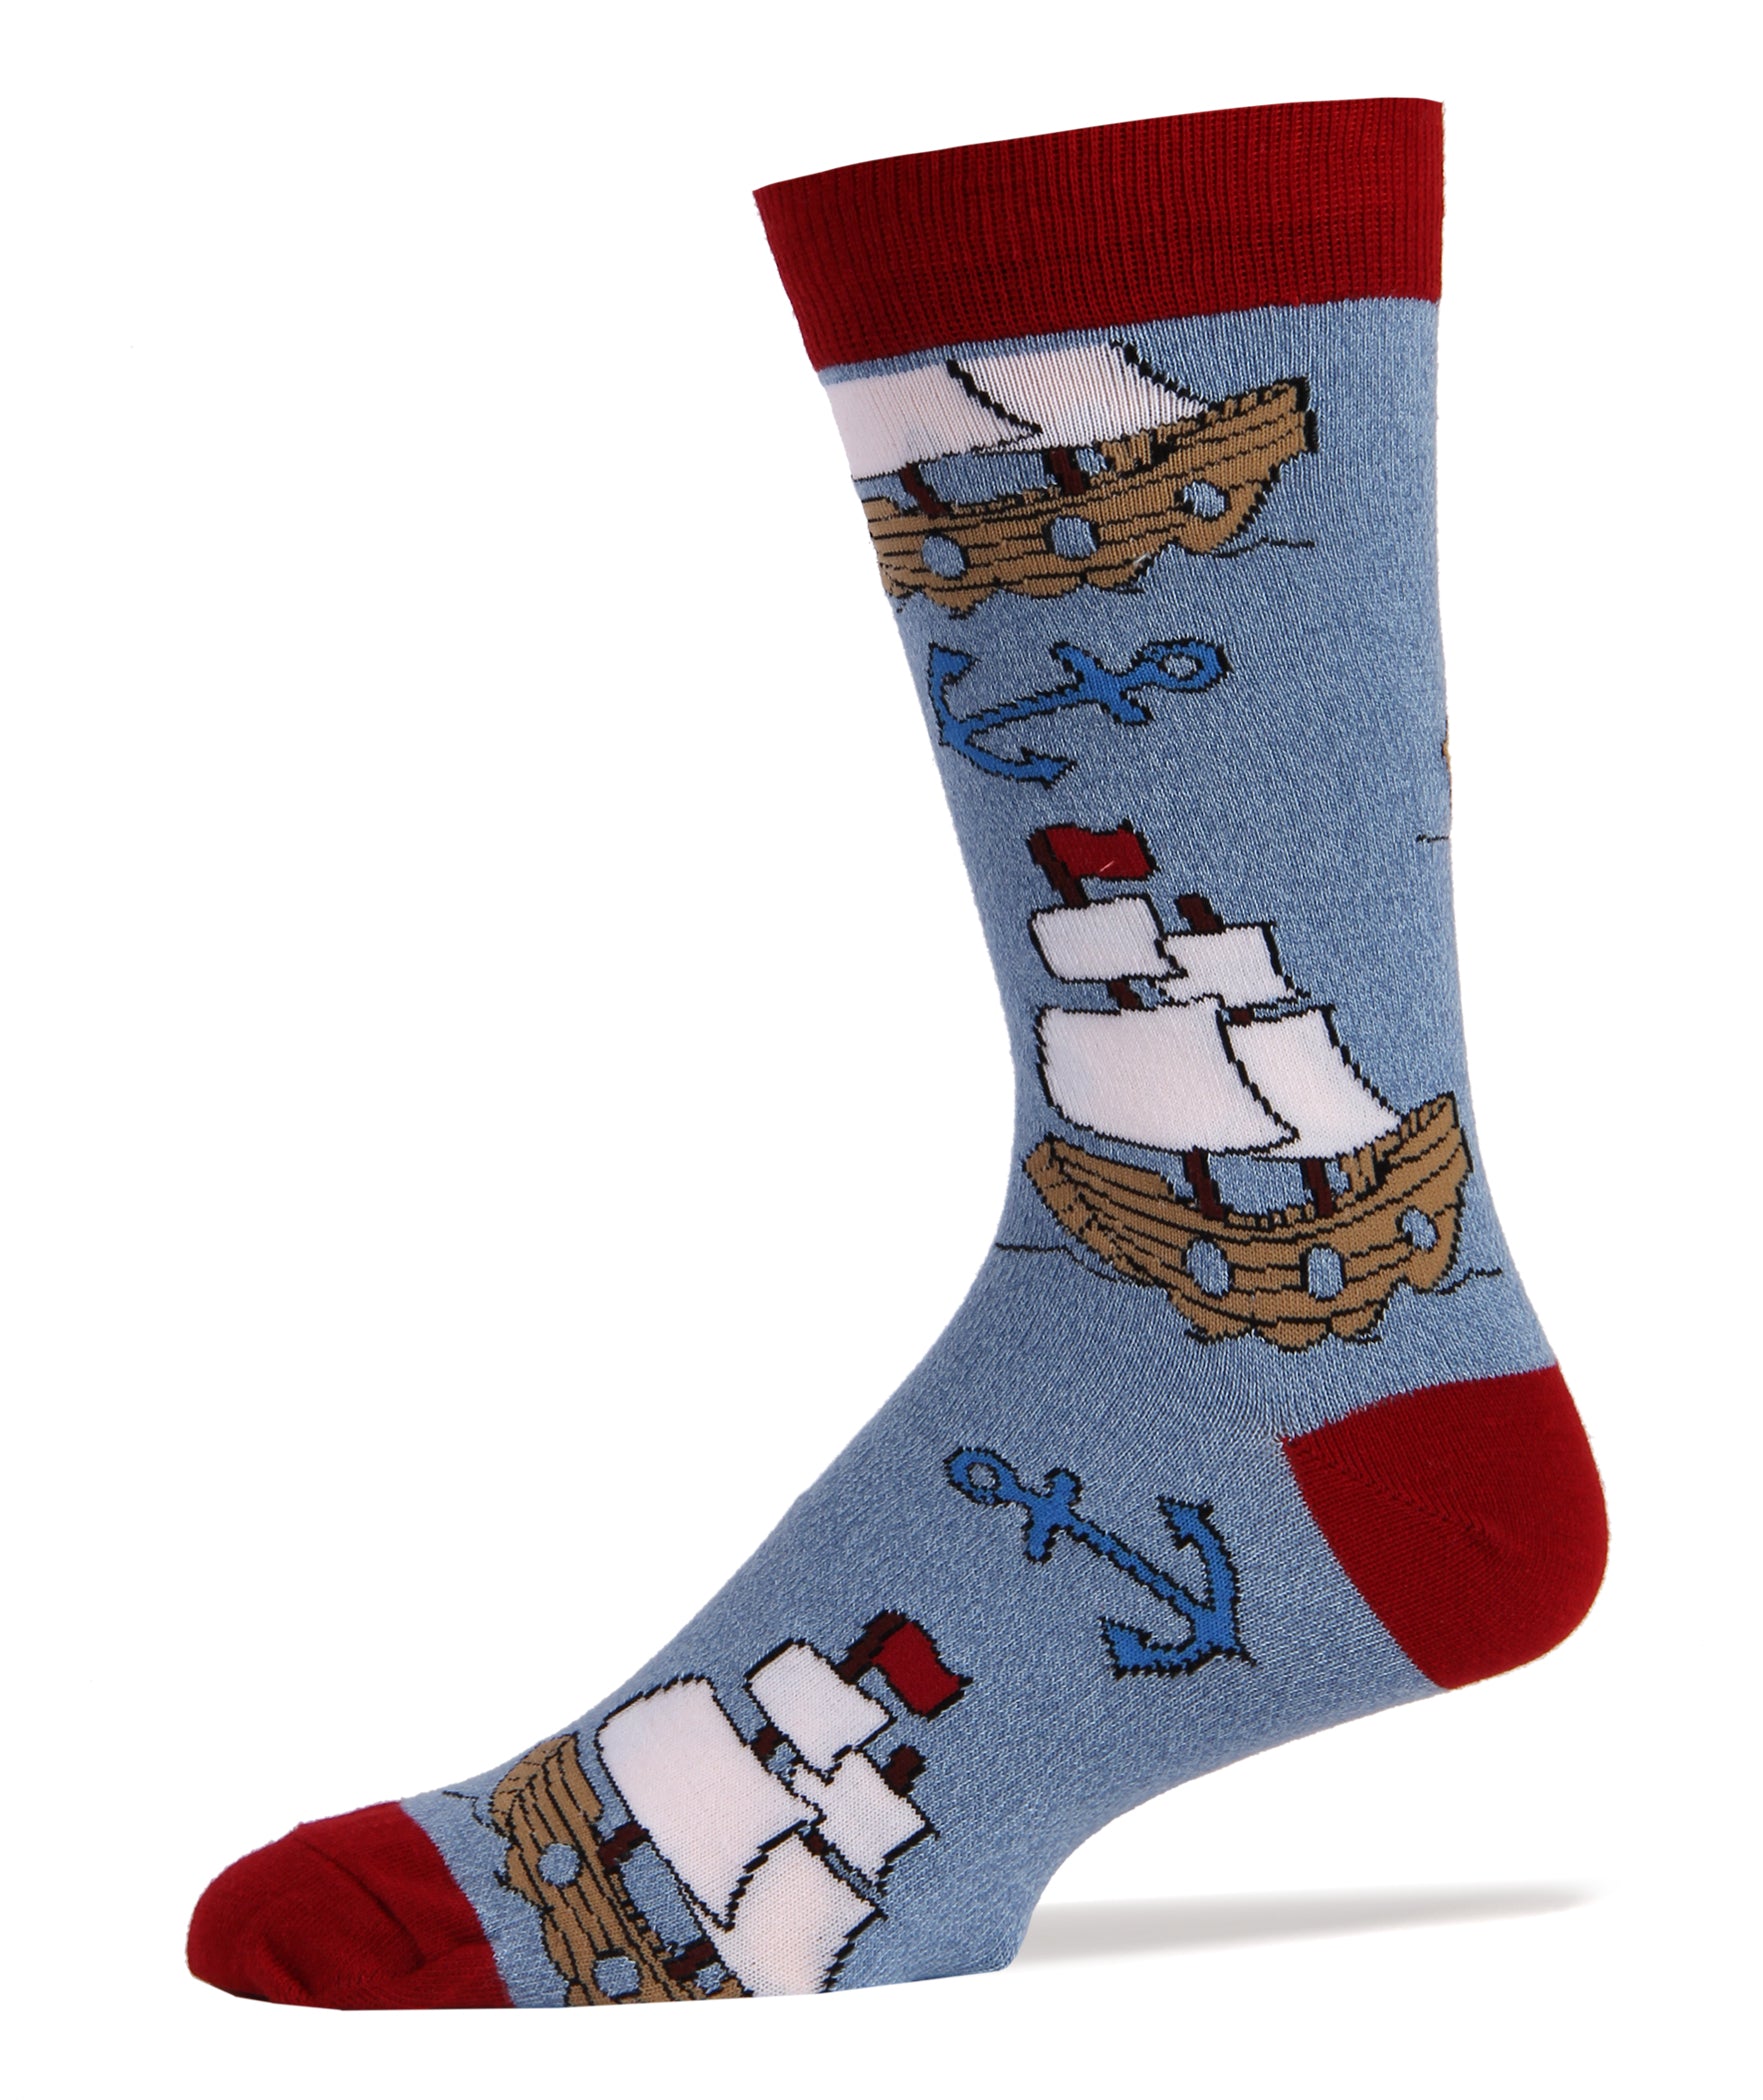 Let's Sail Socks | Novelty Crew Socks For Men